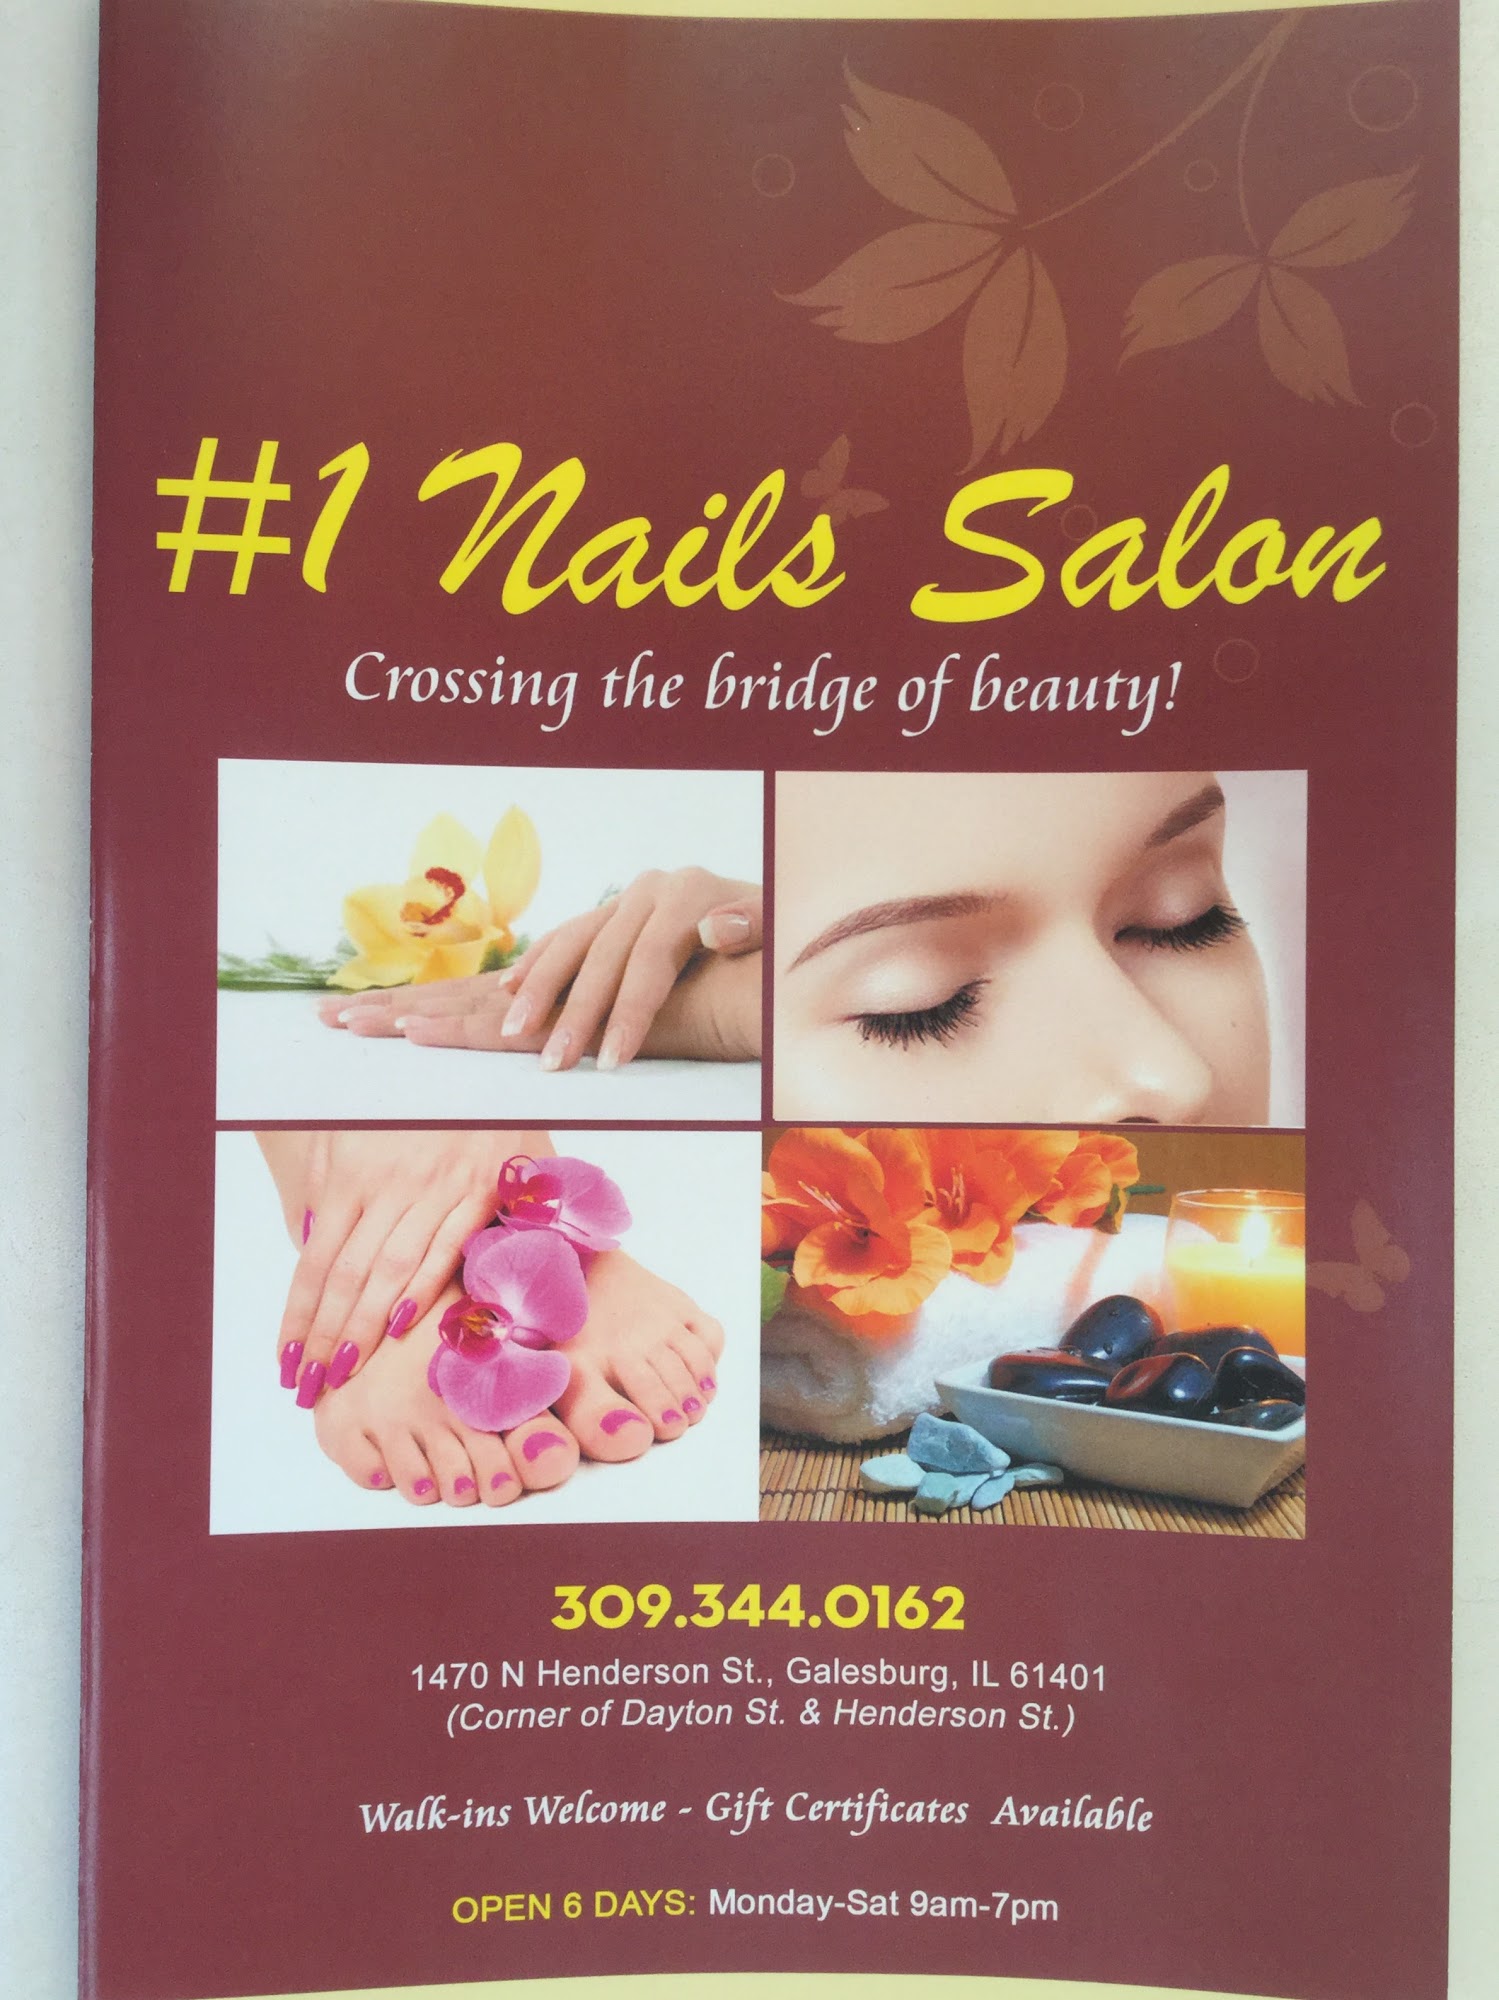 #1 Nails Salon